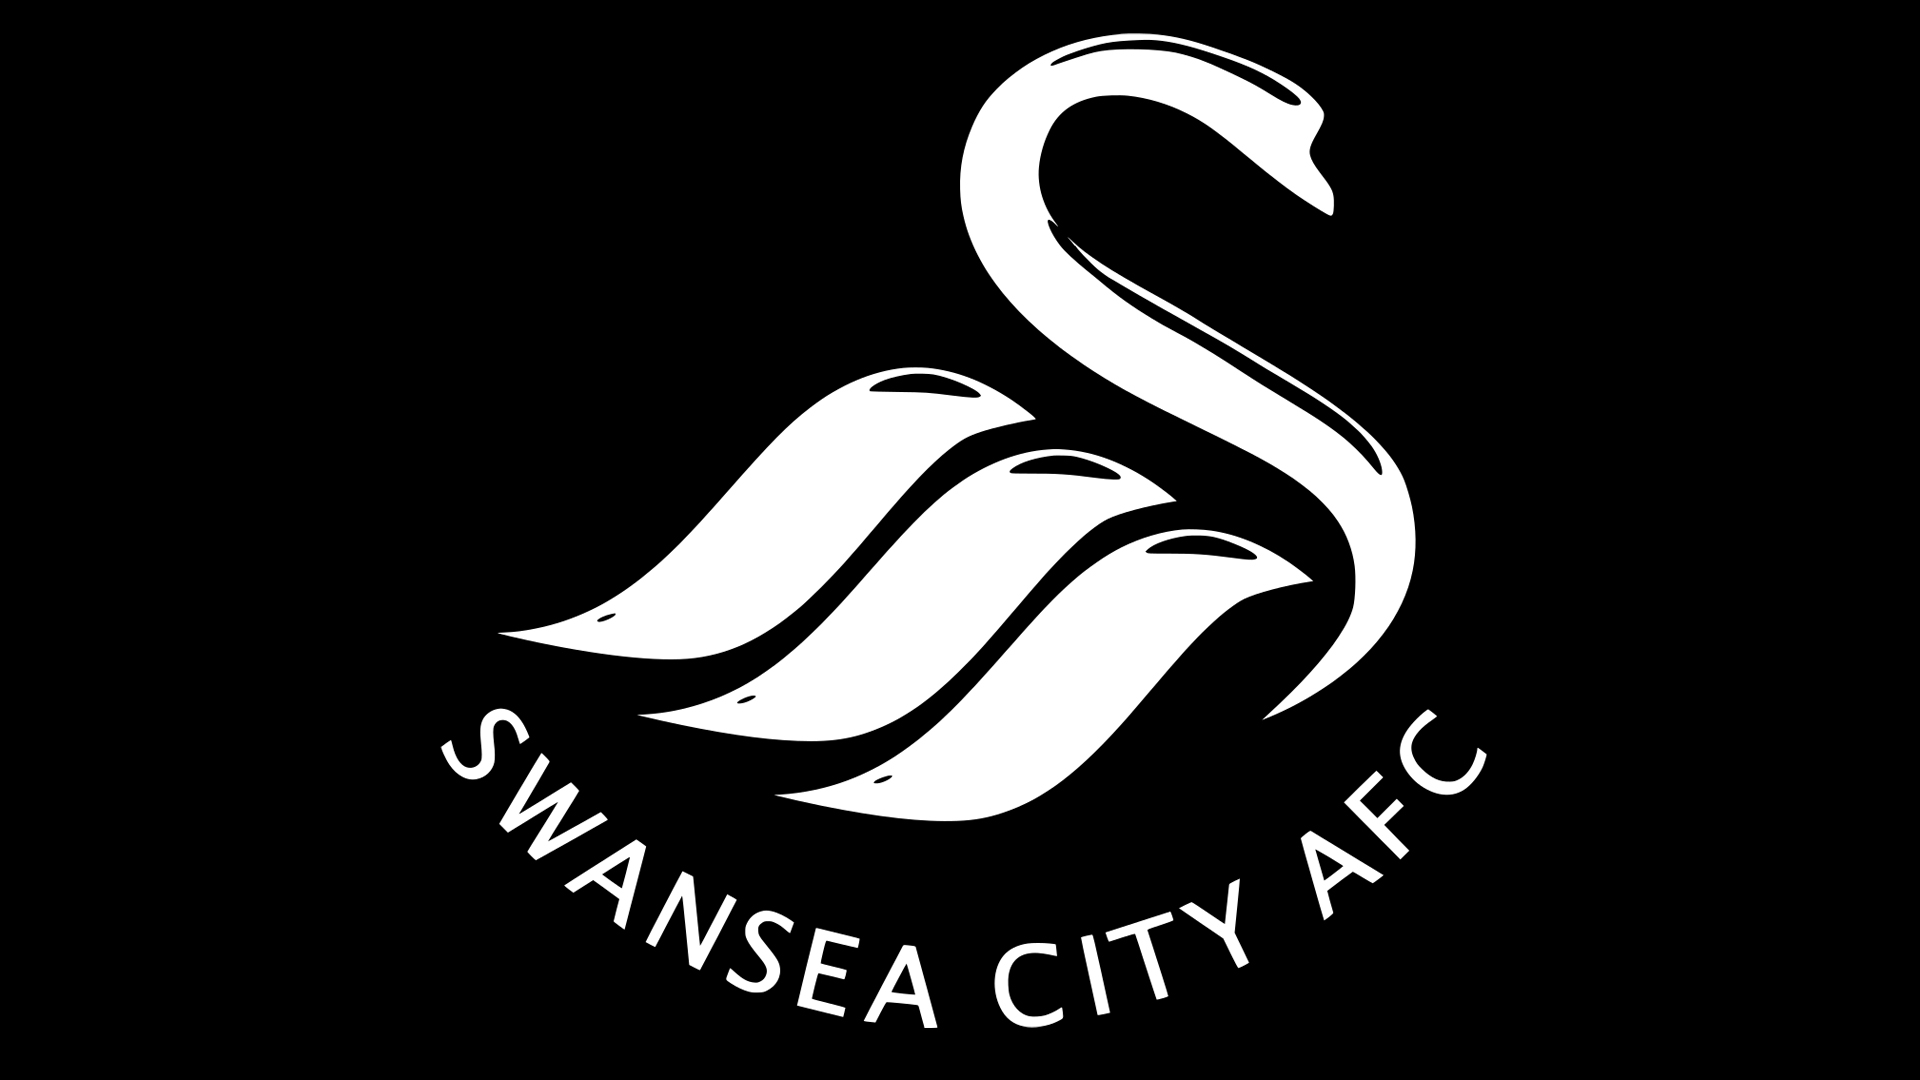 Yobet oficjalnym sponsorem Swansea City